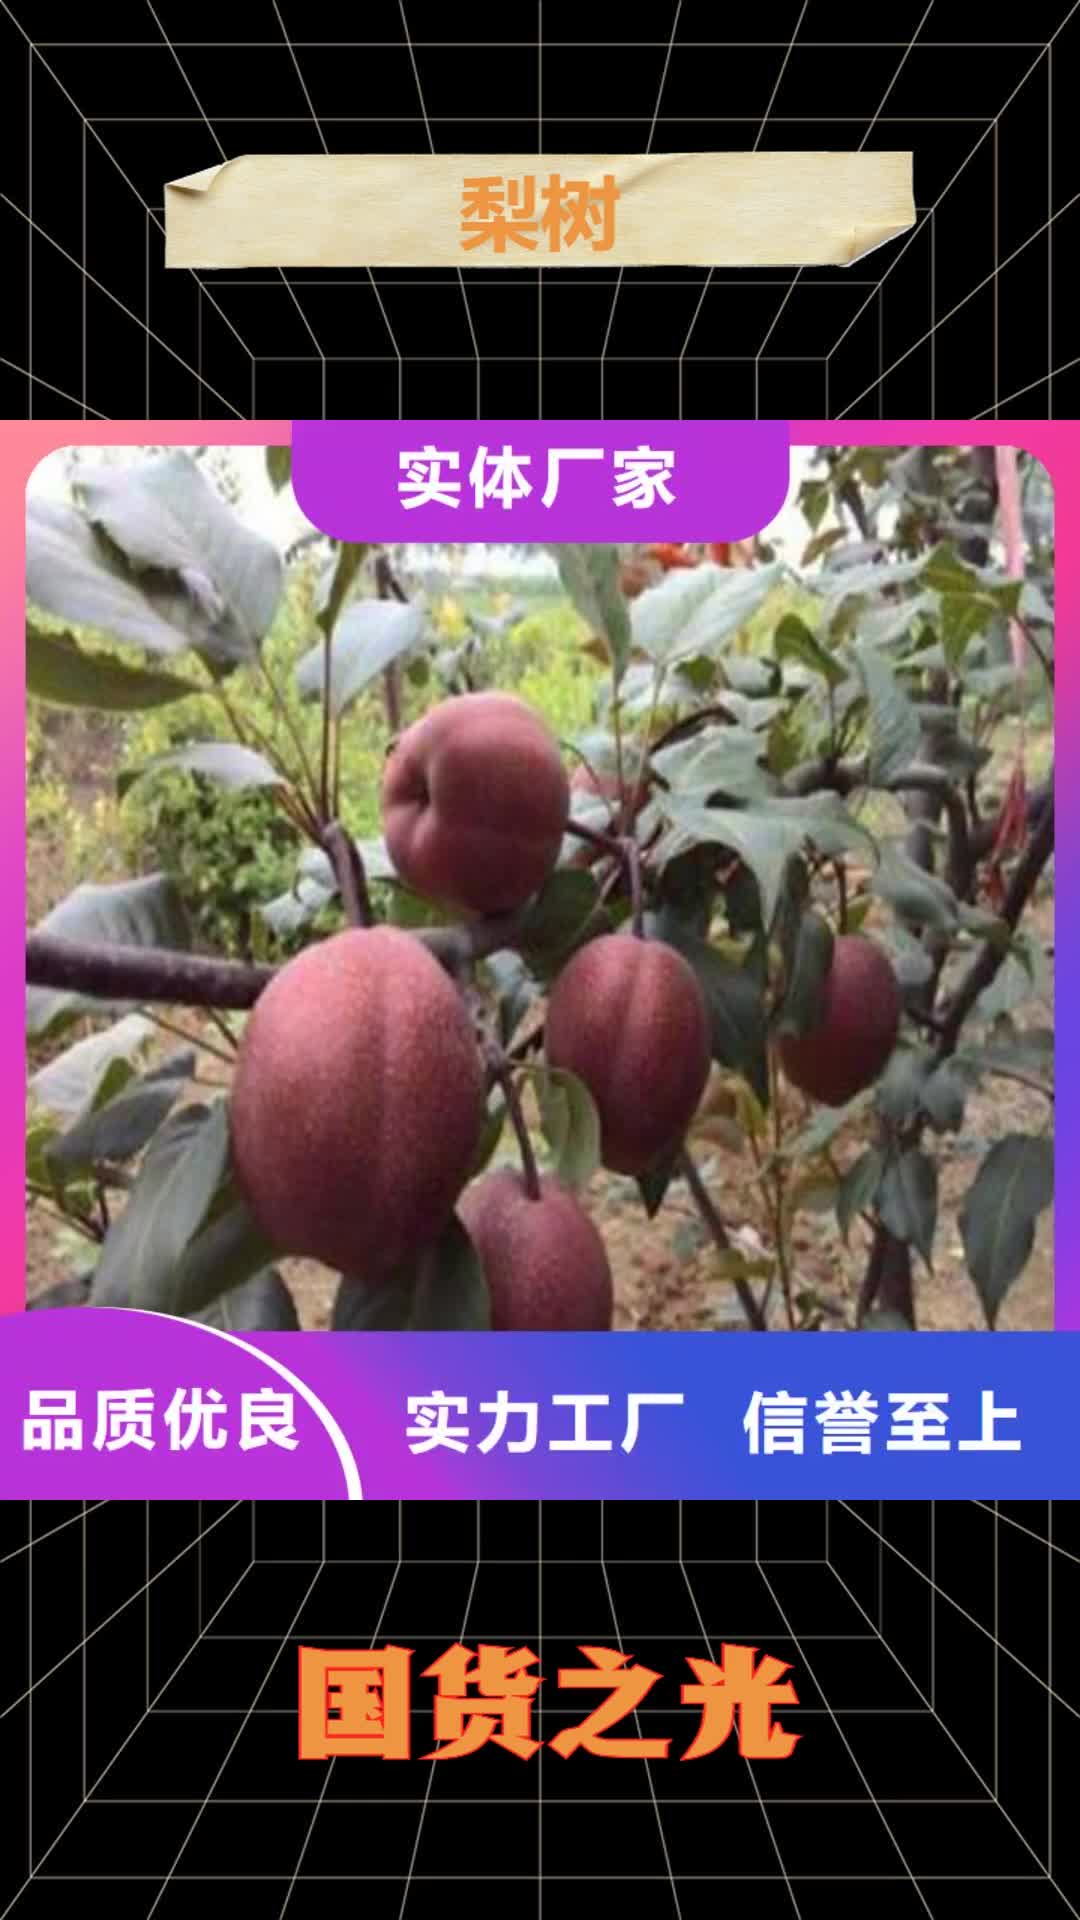 营口【梨树】,樱桃苗现货交易